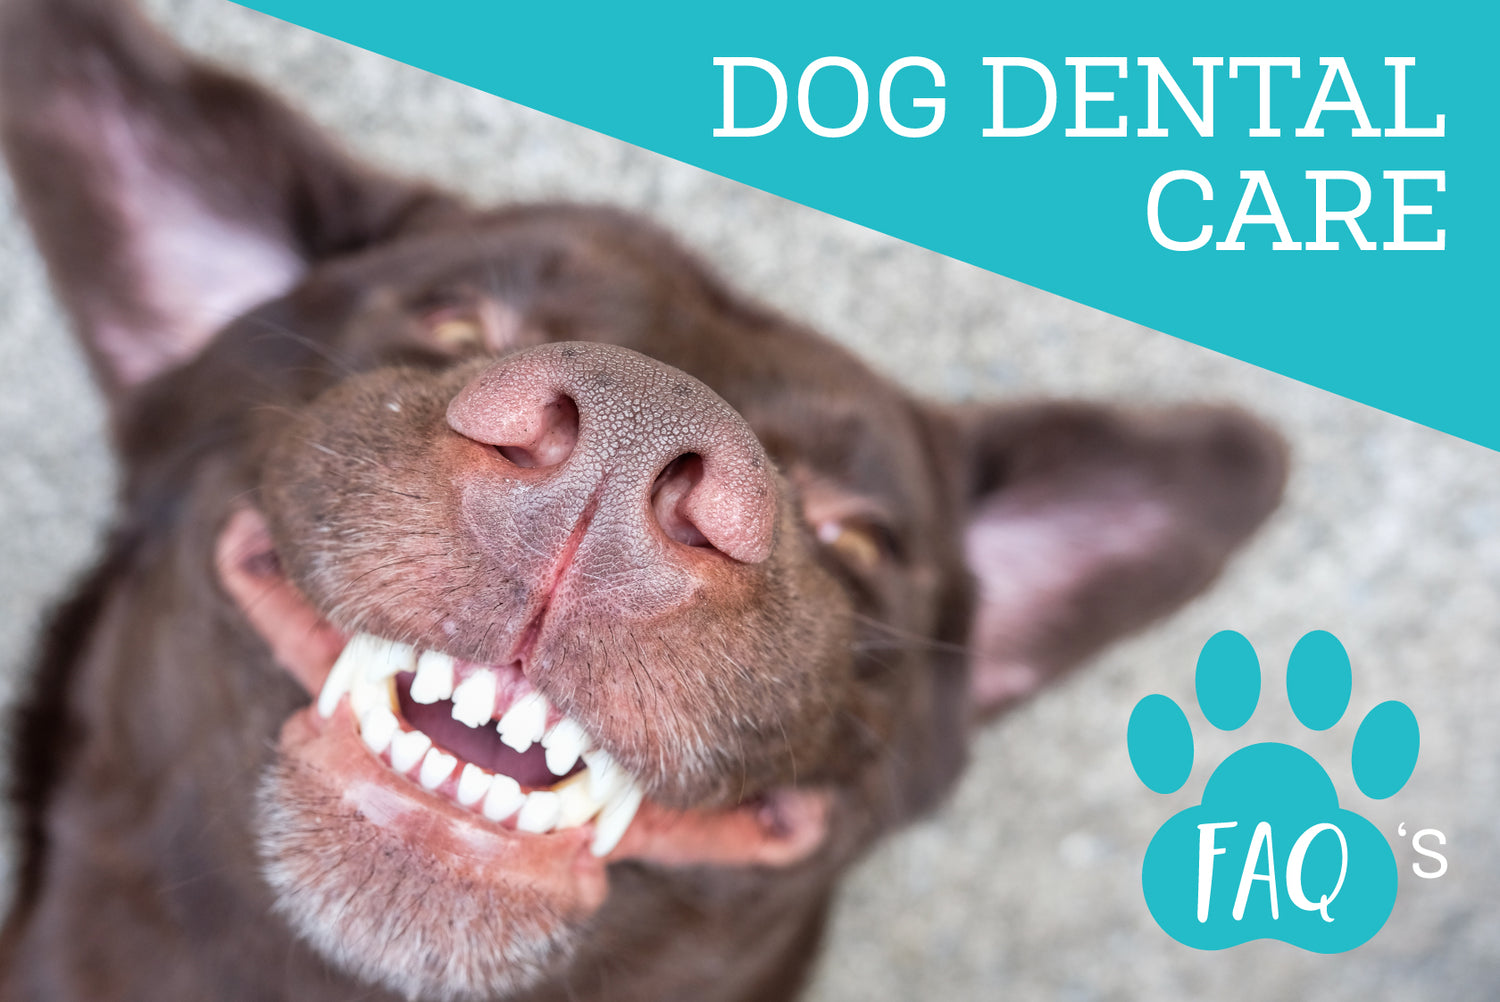 Oxyfresh - Dog Dental Care FAQs